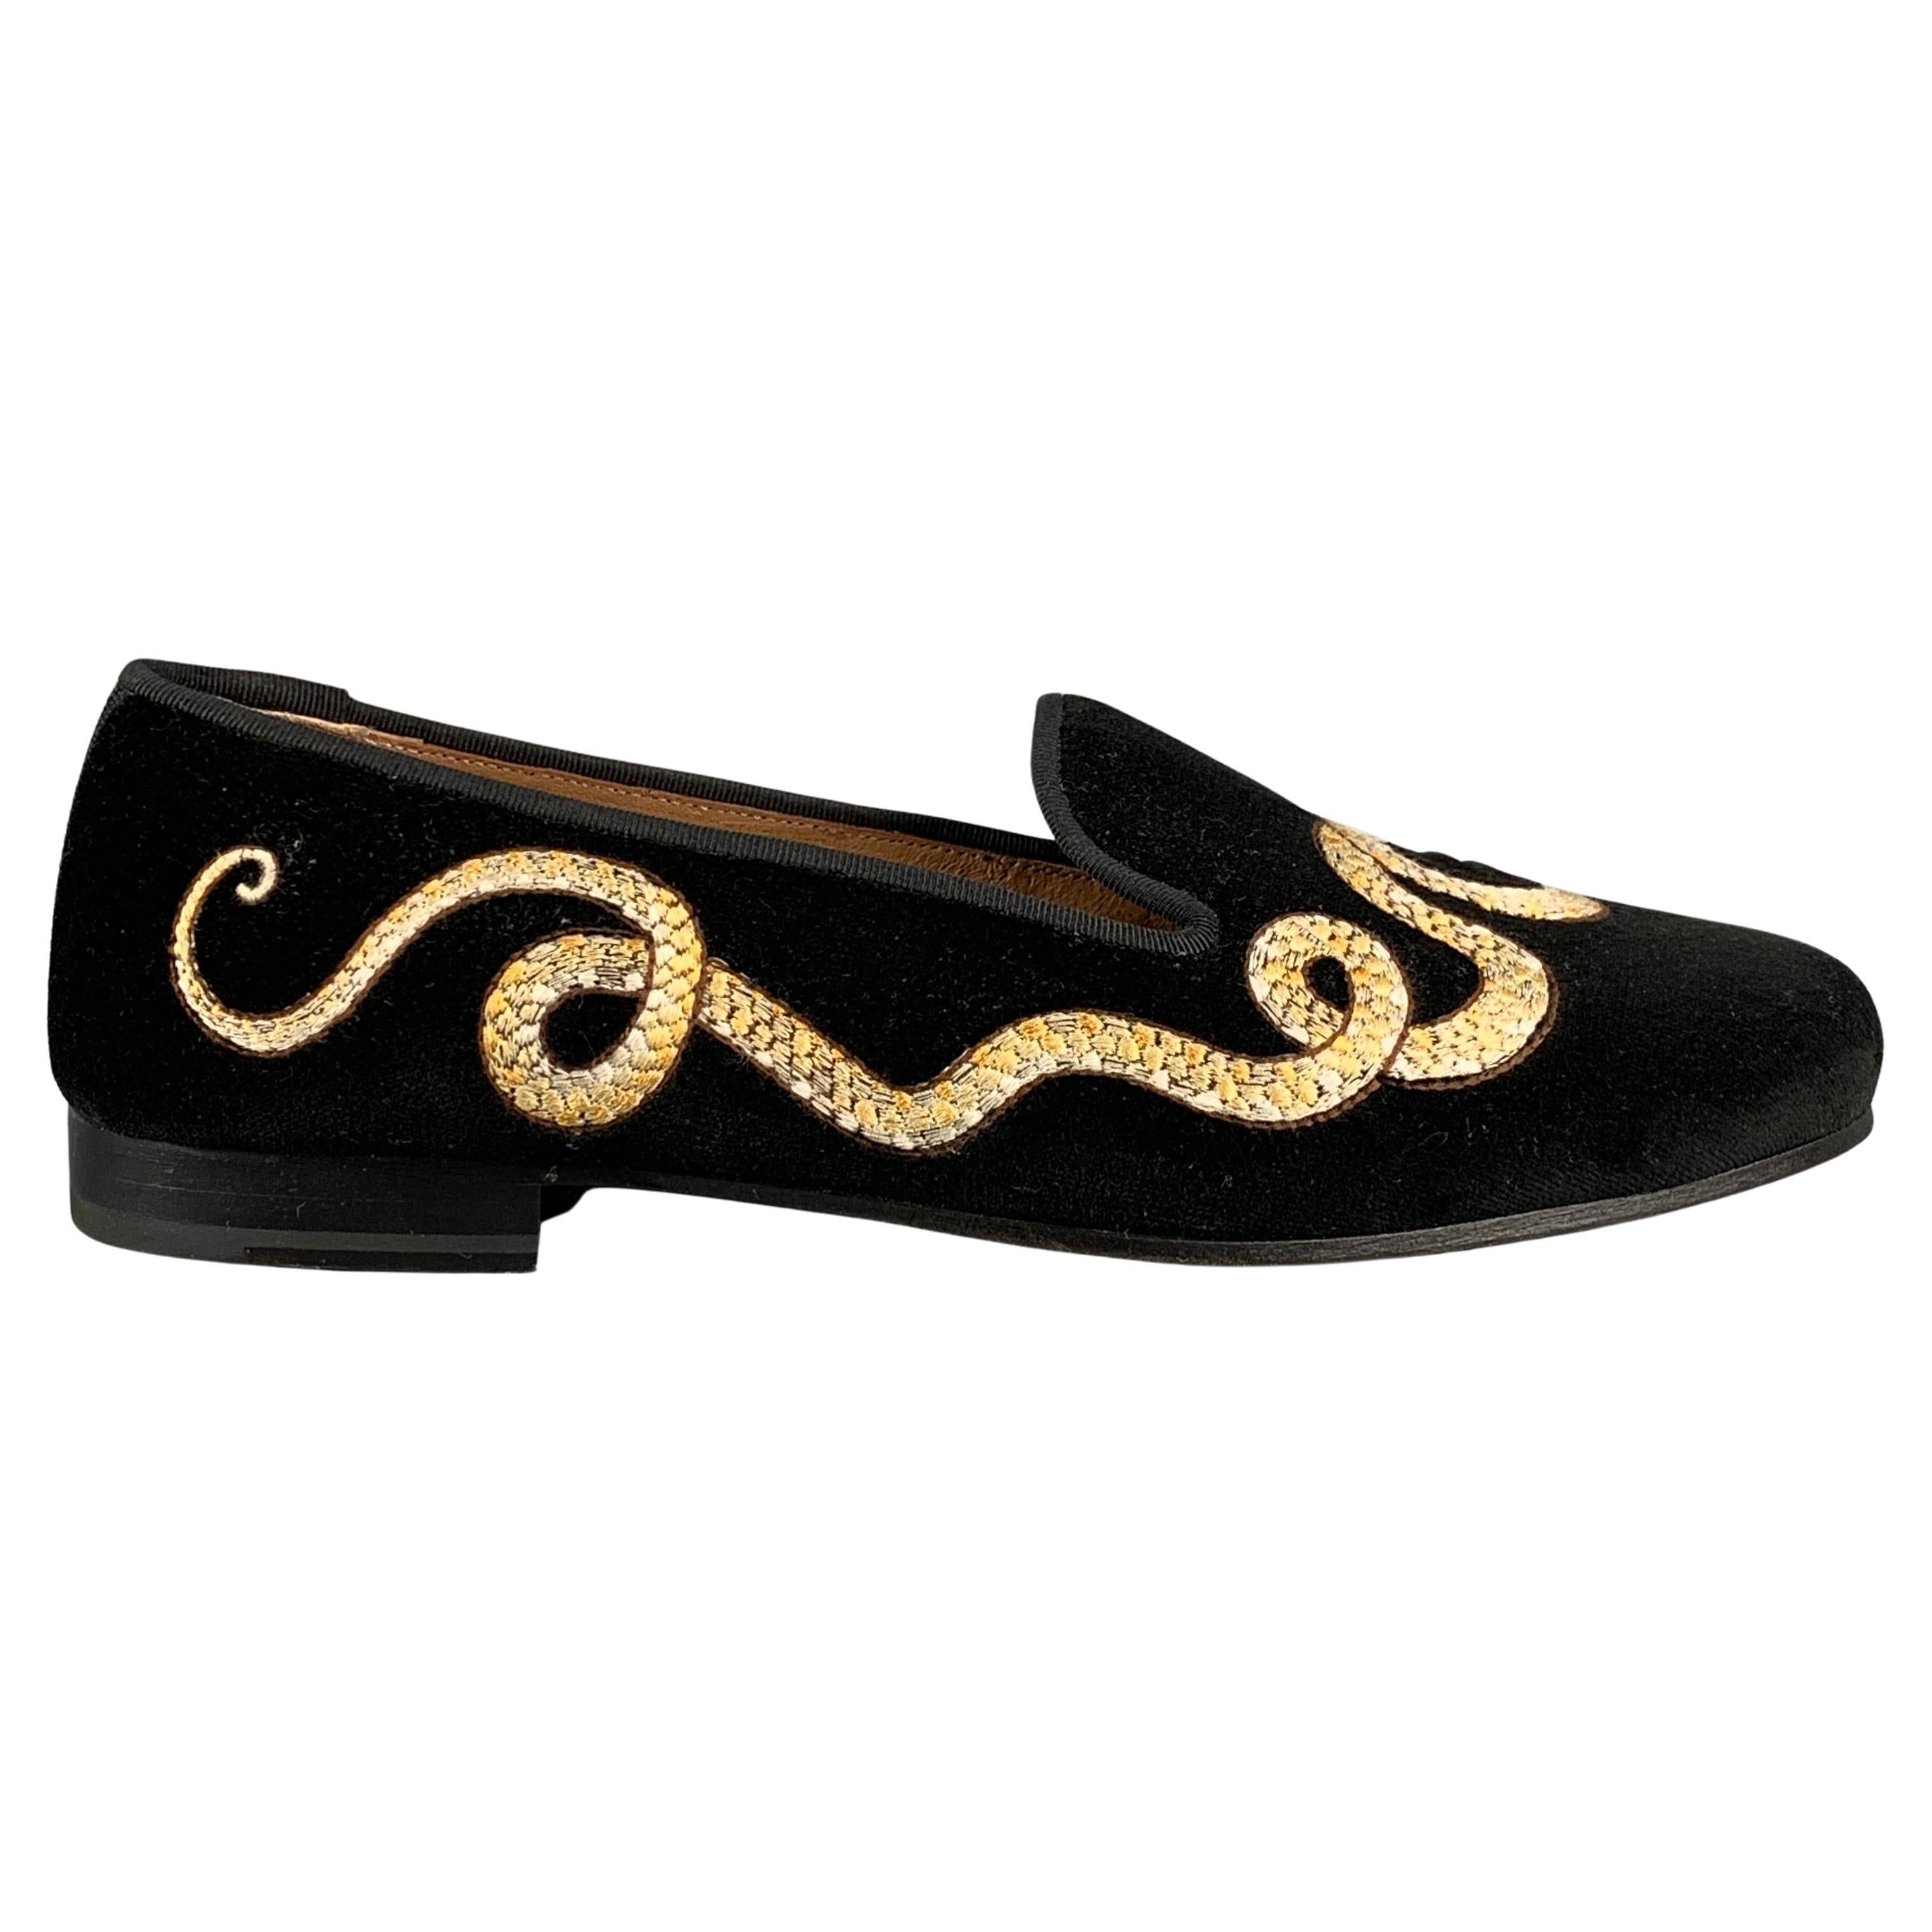 STUBBS & WOOTTON Size 9 Black Velvet Embroidered Slip On Flats